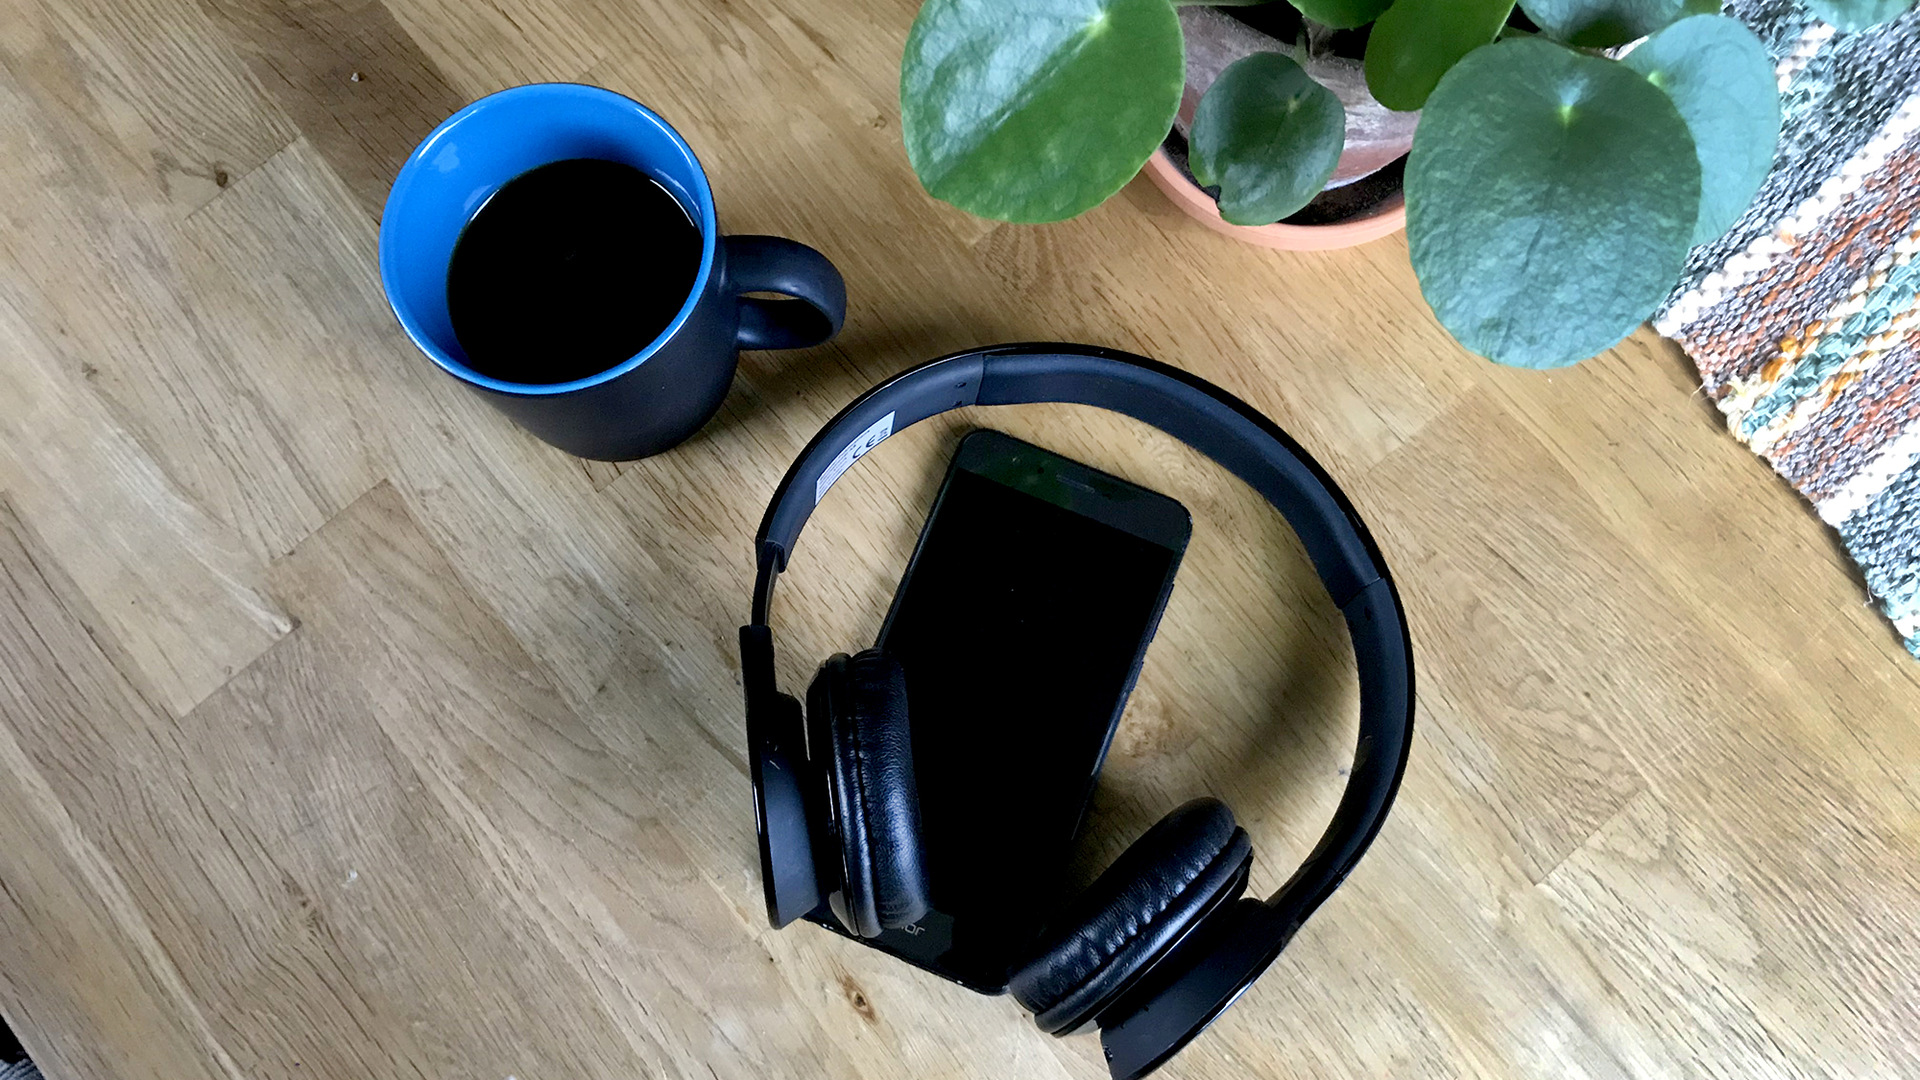 En blå kaffekopp och en svart mobiltelefon och hörlurar